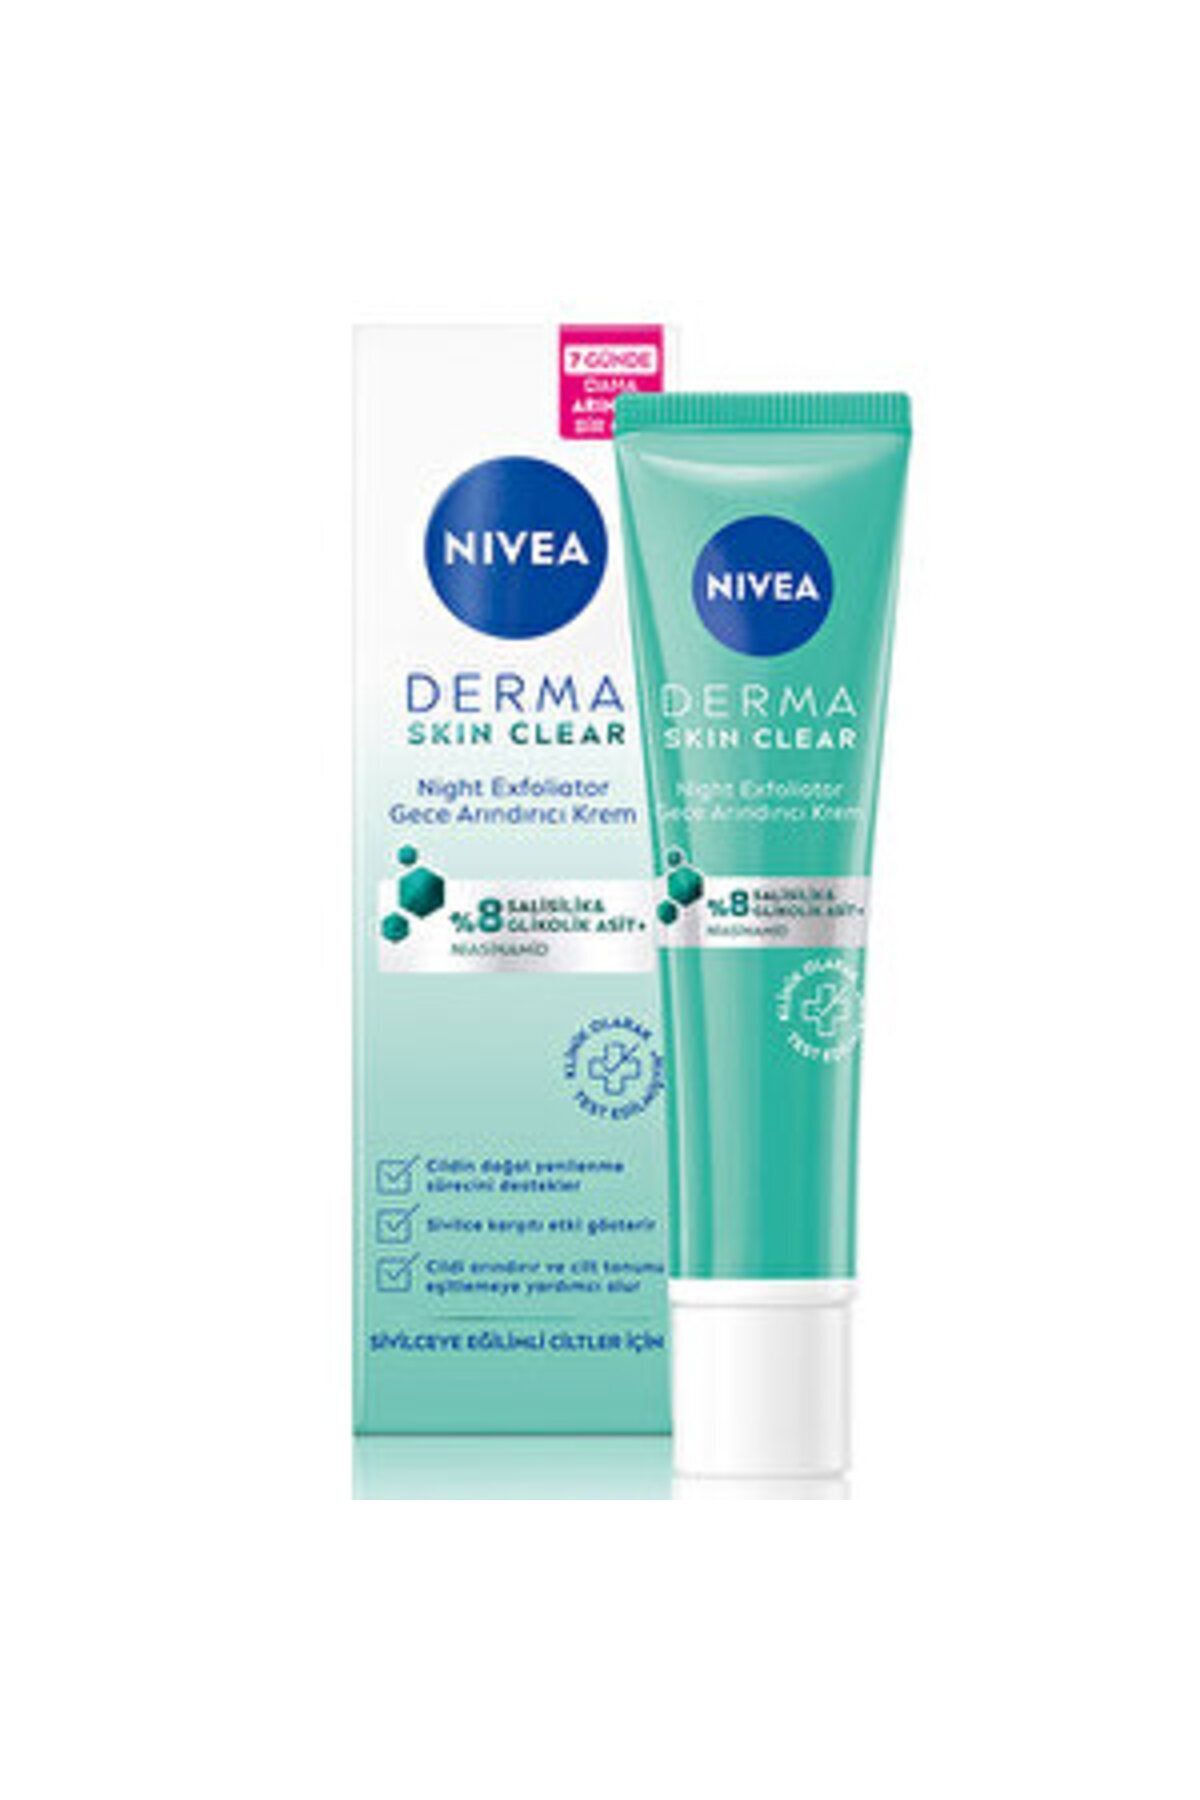 NIVEA ( 3 ADET ) Nivea Derma Skin Clear Night Exfoliator Gece Arındırıcı Krem 40 ml